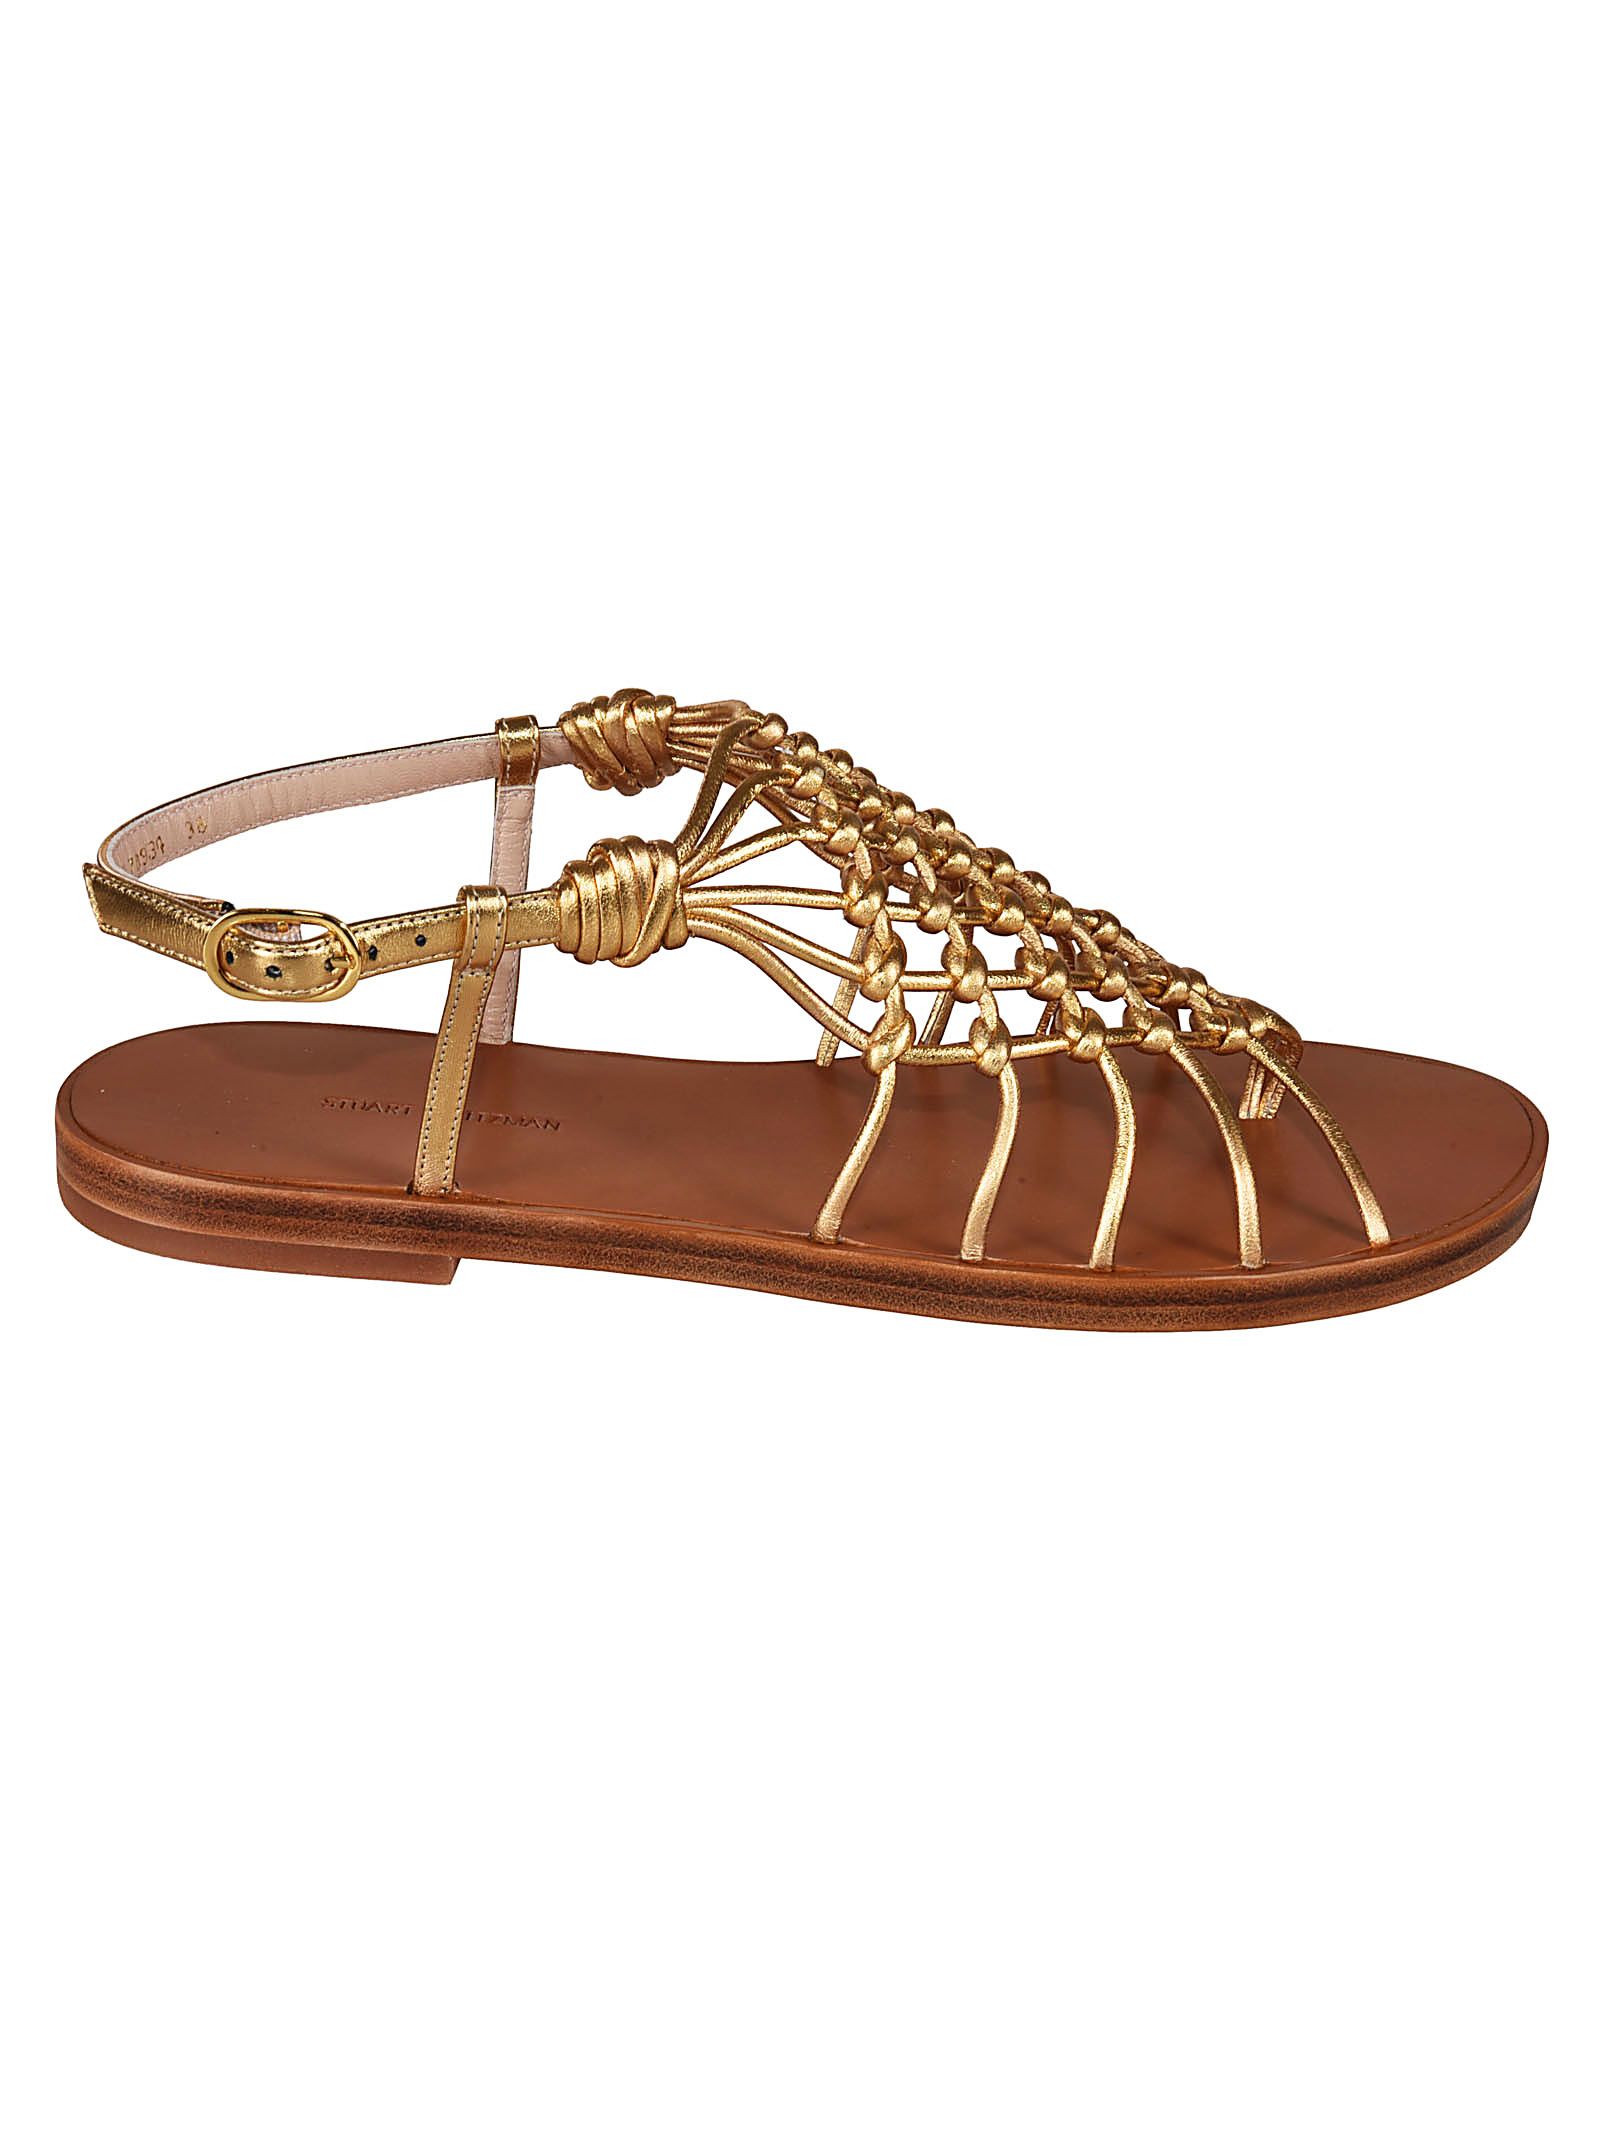 Stuart Weitzman Stuart Weitzman Seaside Flat Sandals - Gold - 10894061